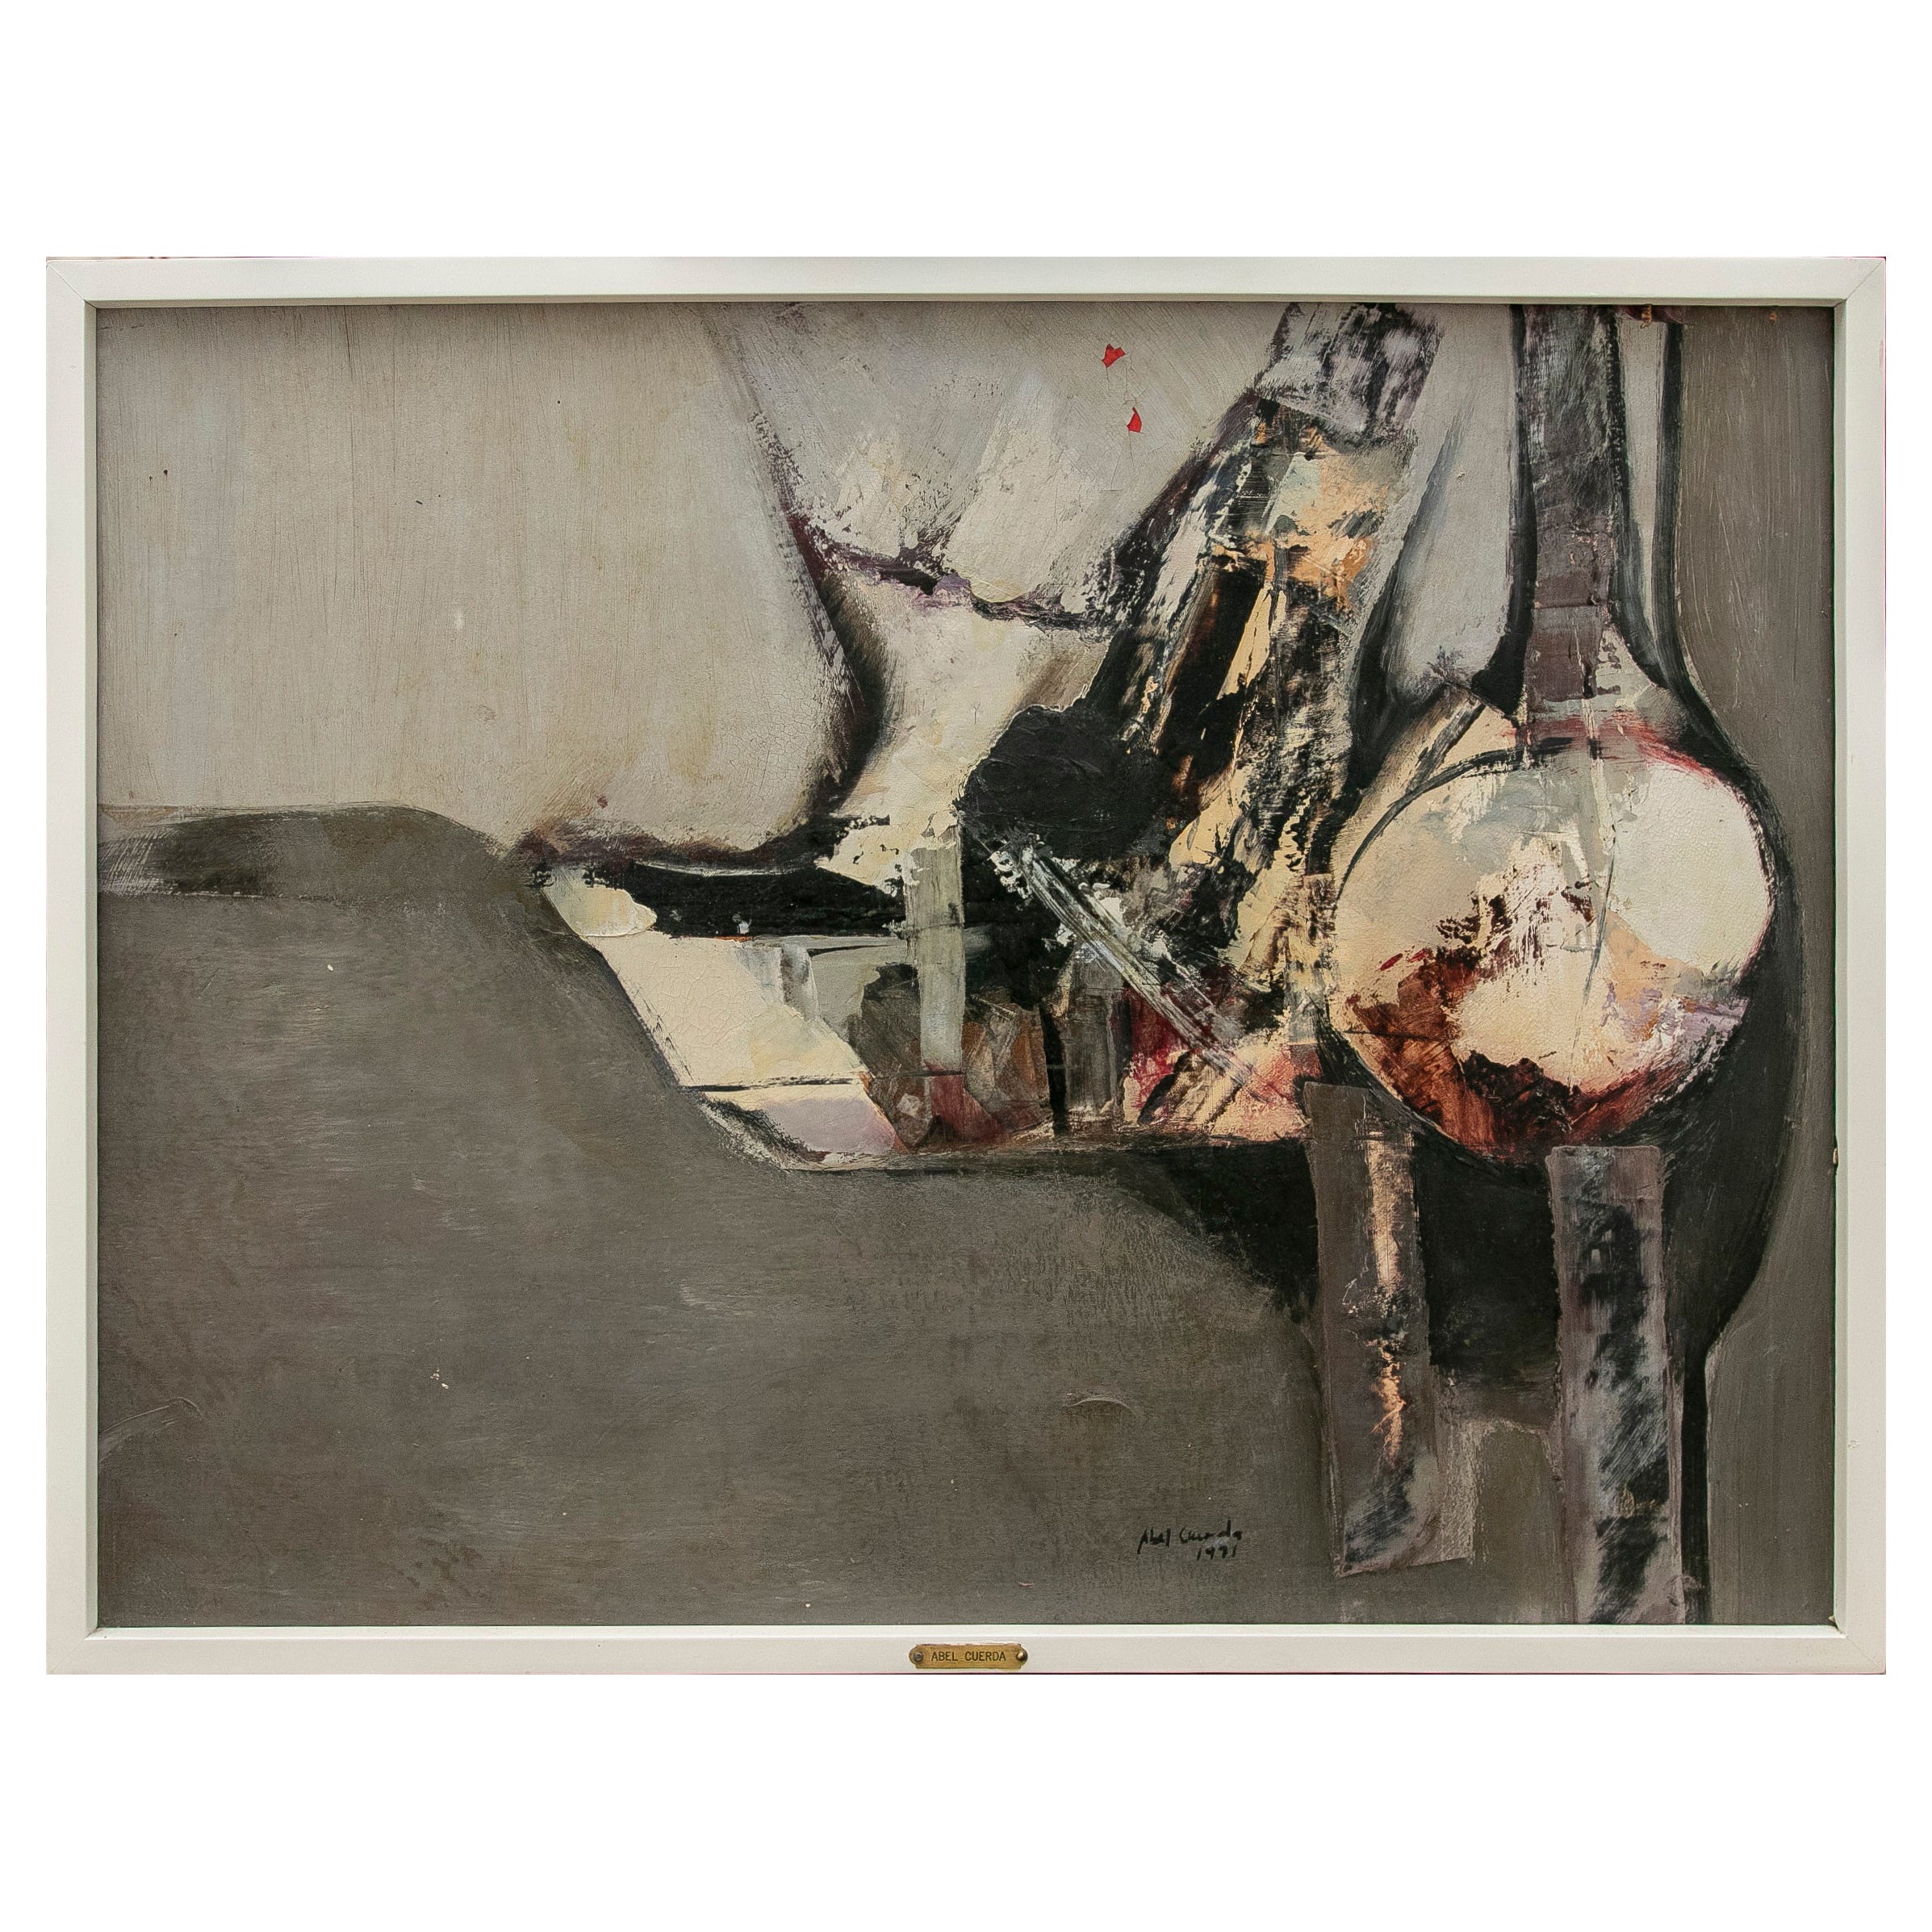 Peinture abstraite de l'artiste Abel Cuerda, signée et datée de l'année 1991